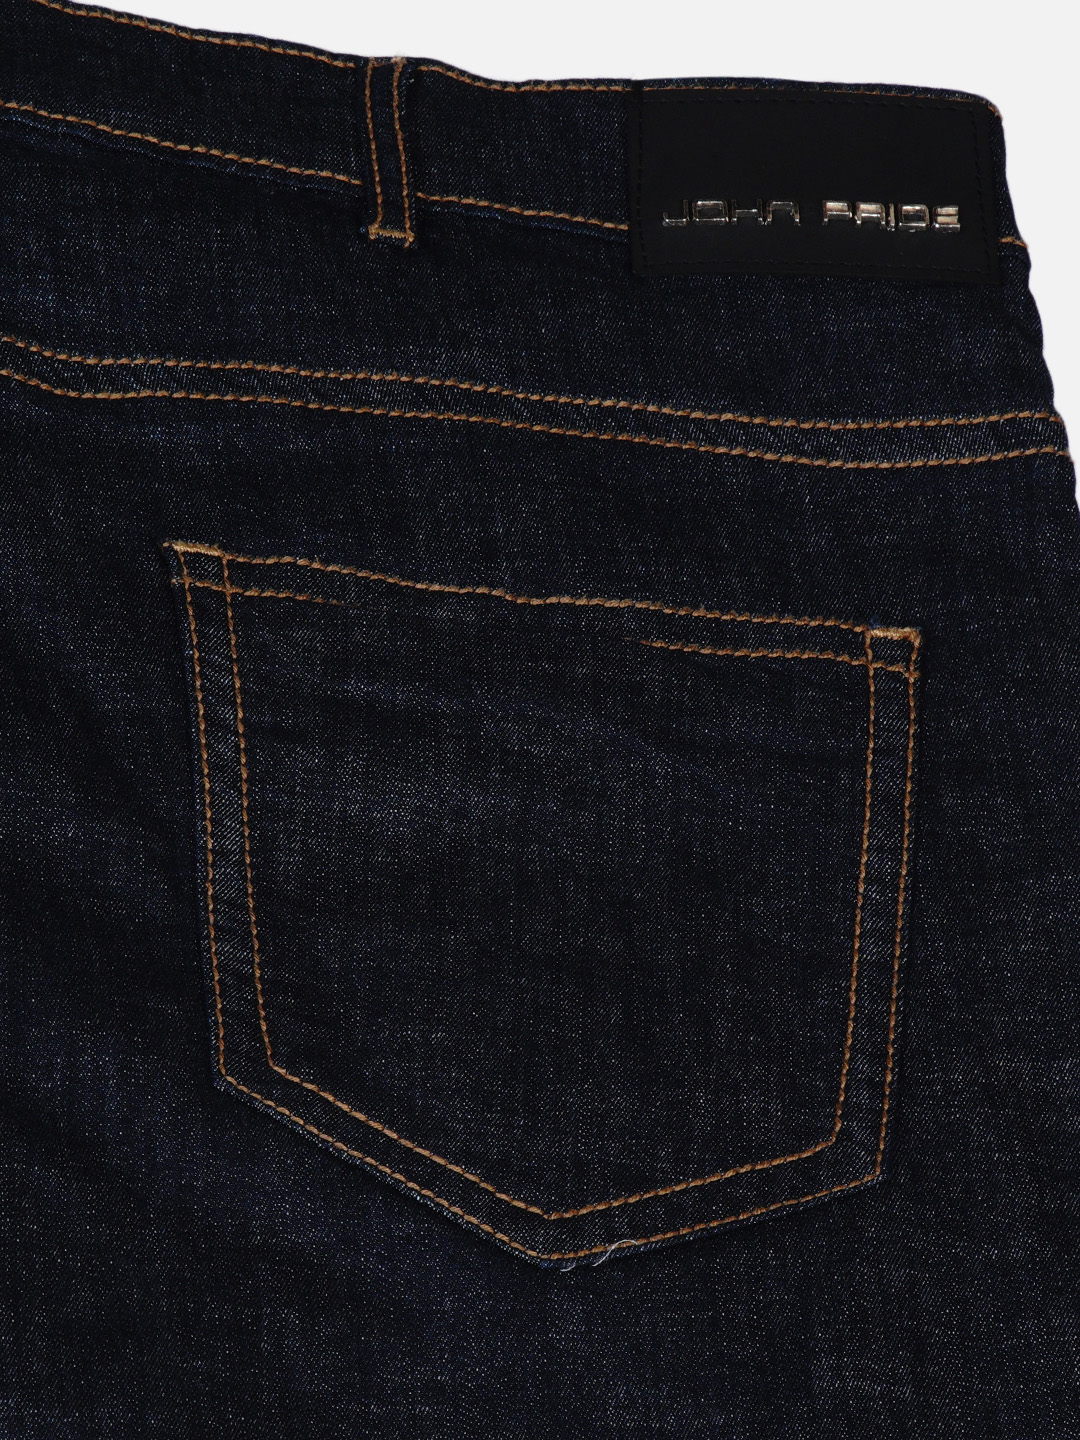 bottomwear/jeans/JPJ6035/jpj6035-2.jpg